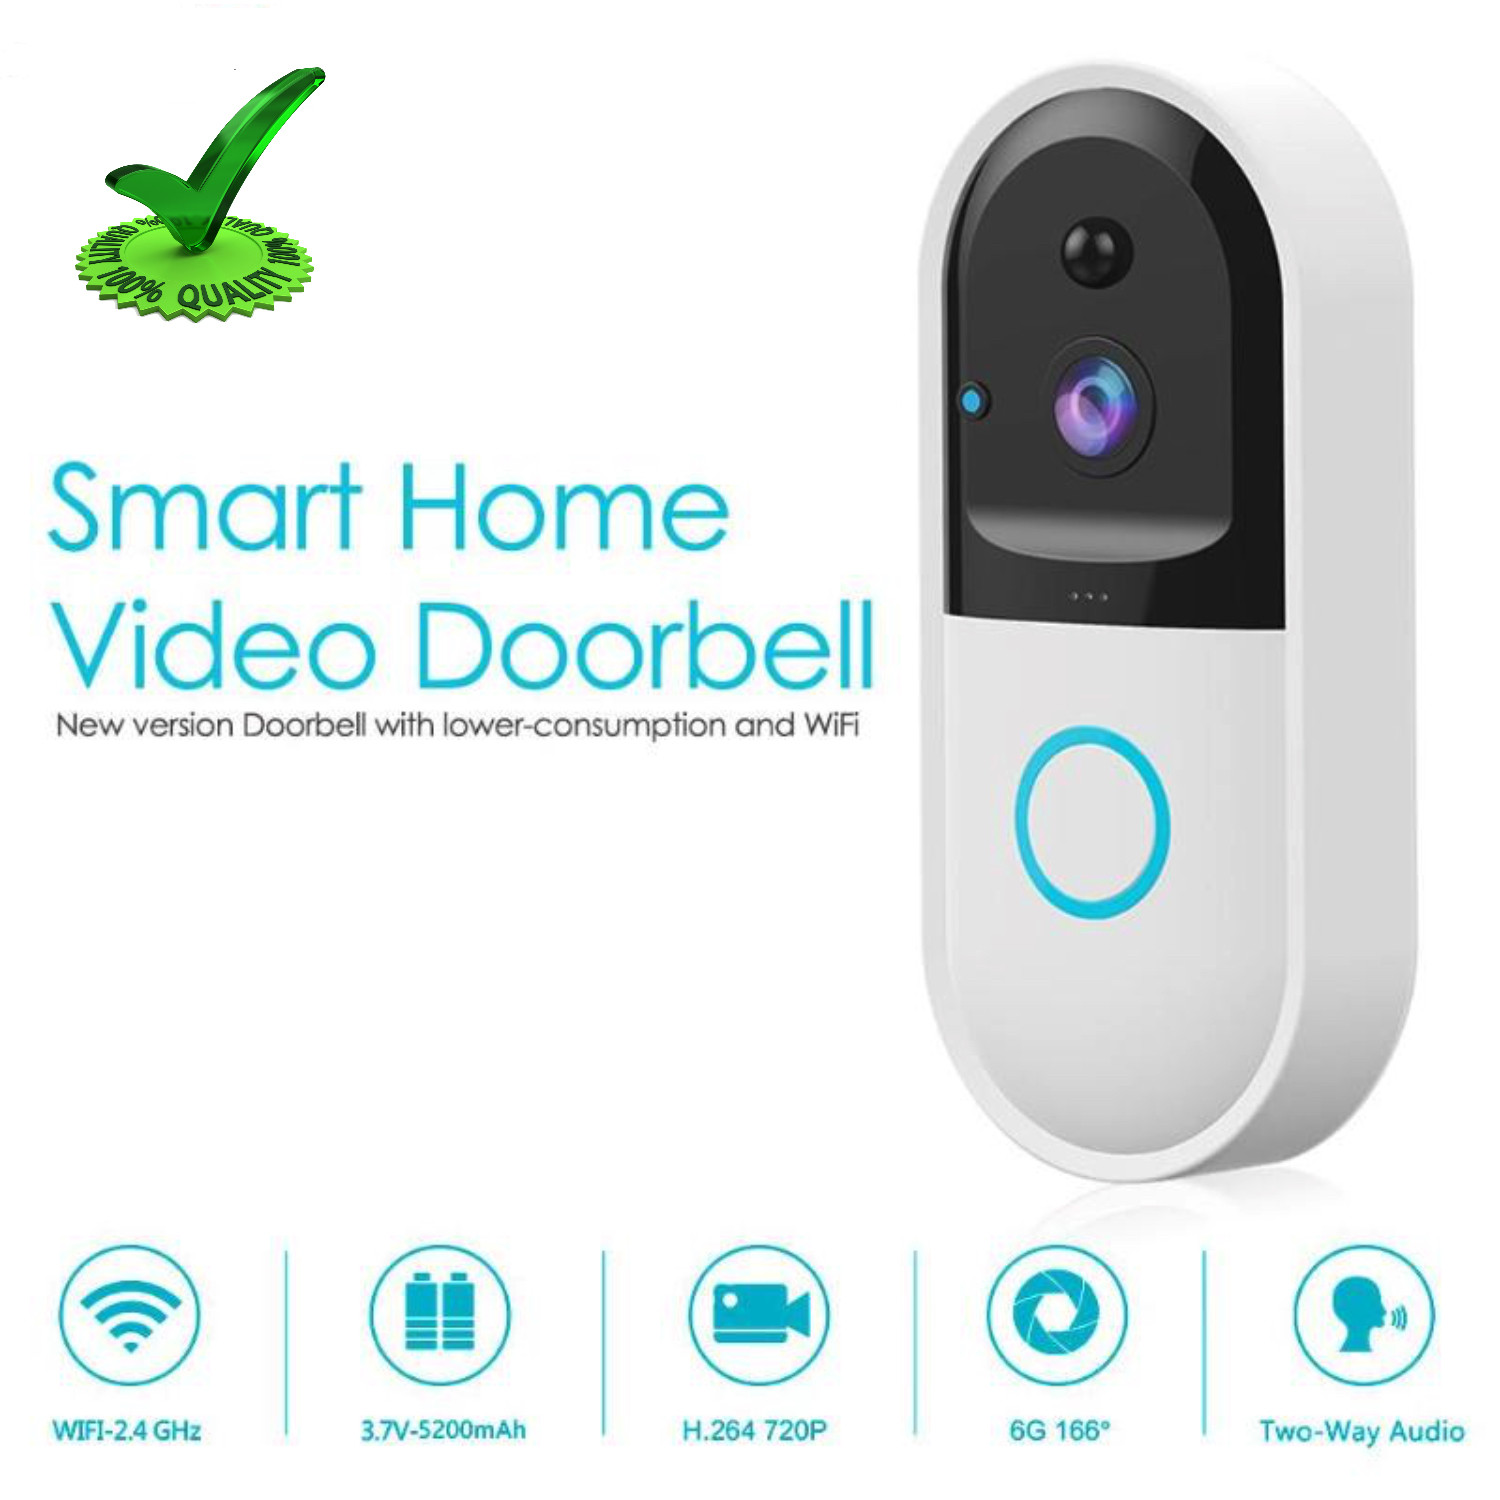 Smart Gsm Hd Video Door Phone Intercom